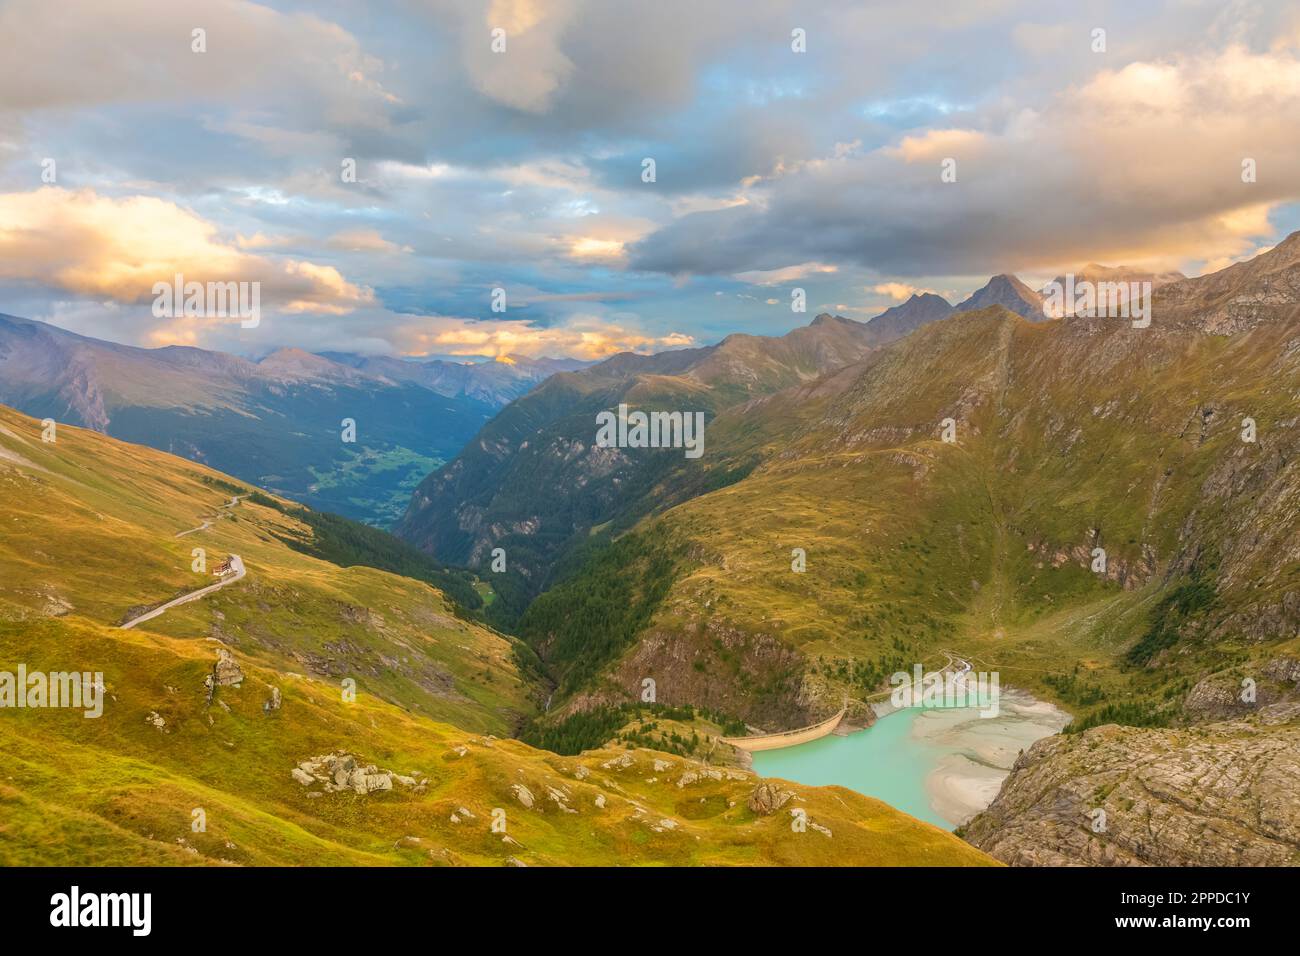 Autriche, Salzburger Land, paysage pittoresque du parc national Hohe Tauern au crépuscule Banque D'Images